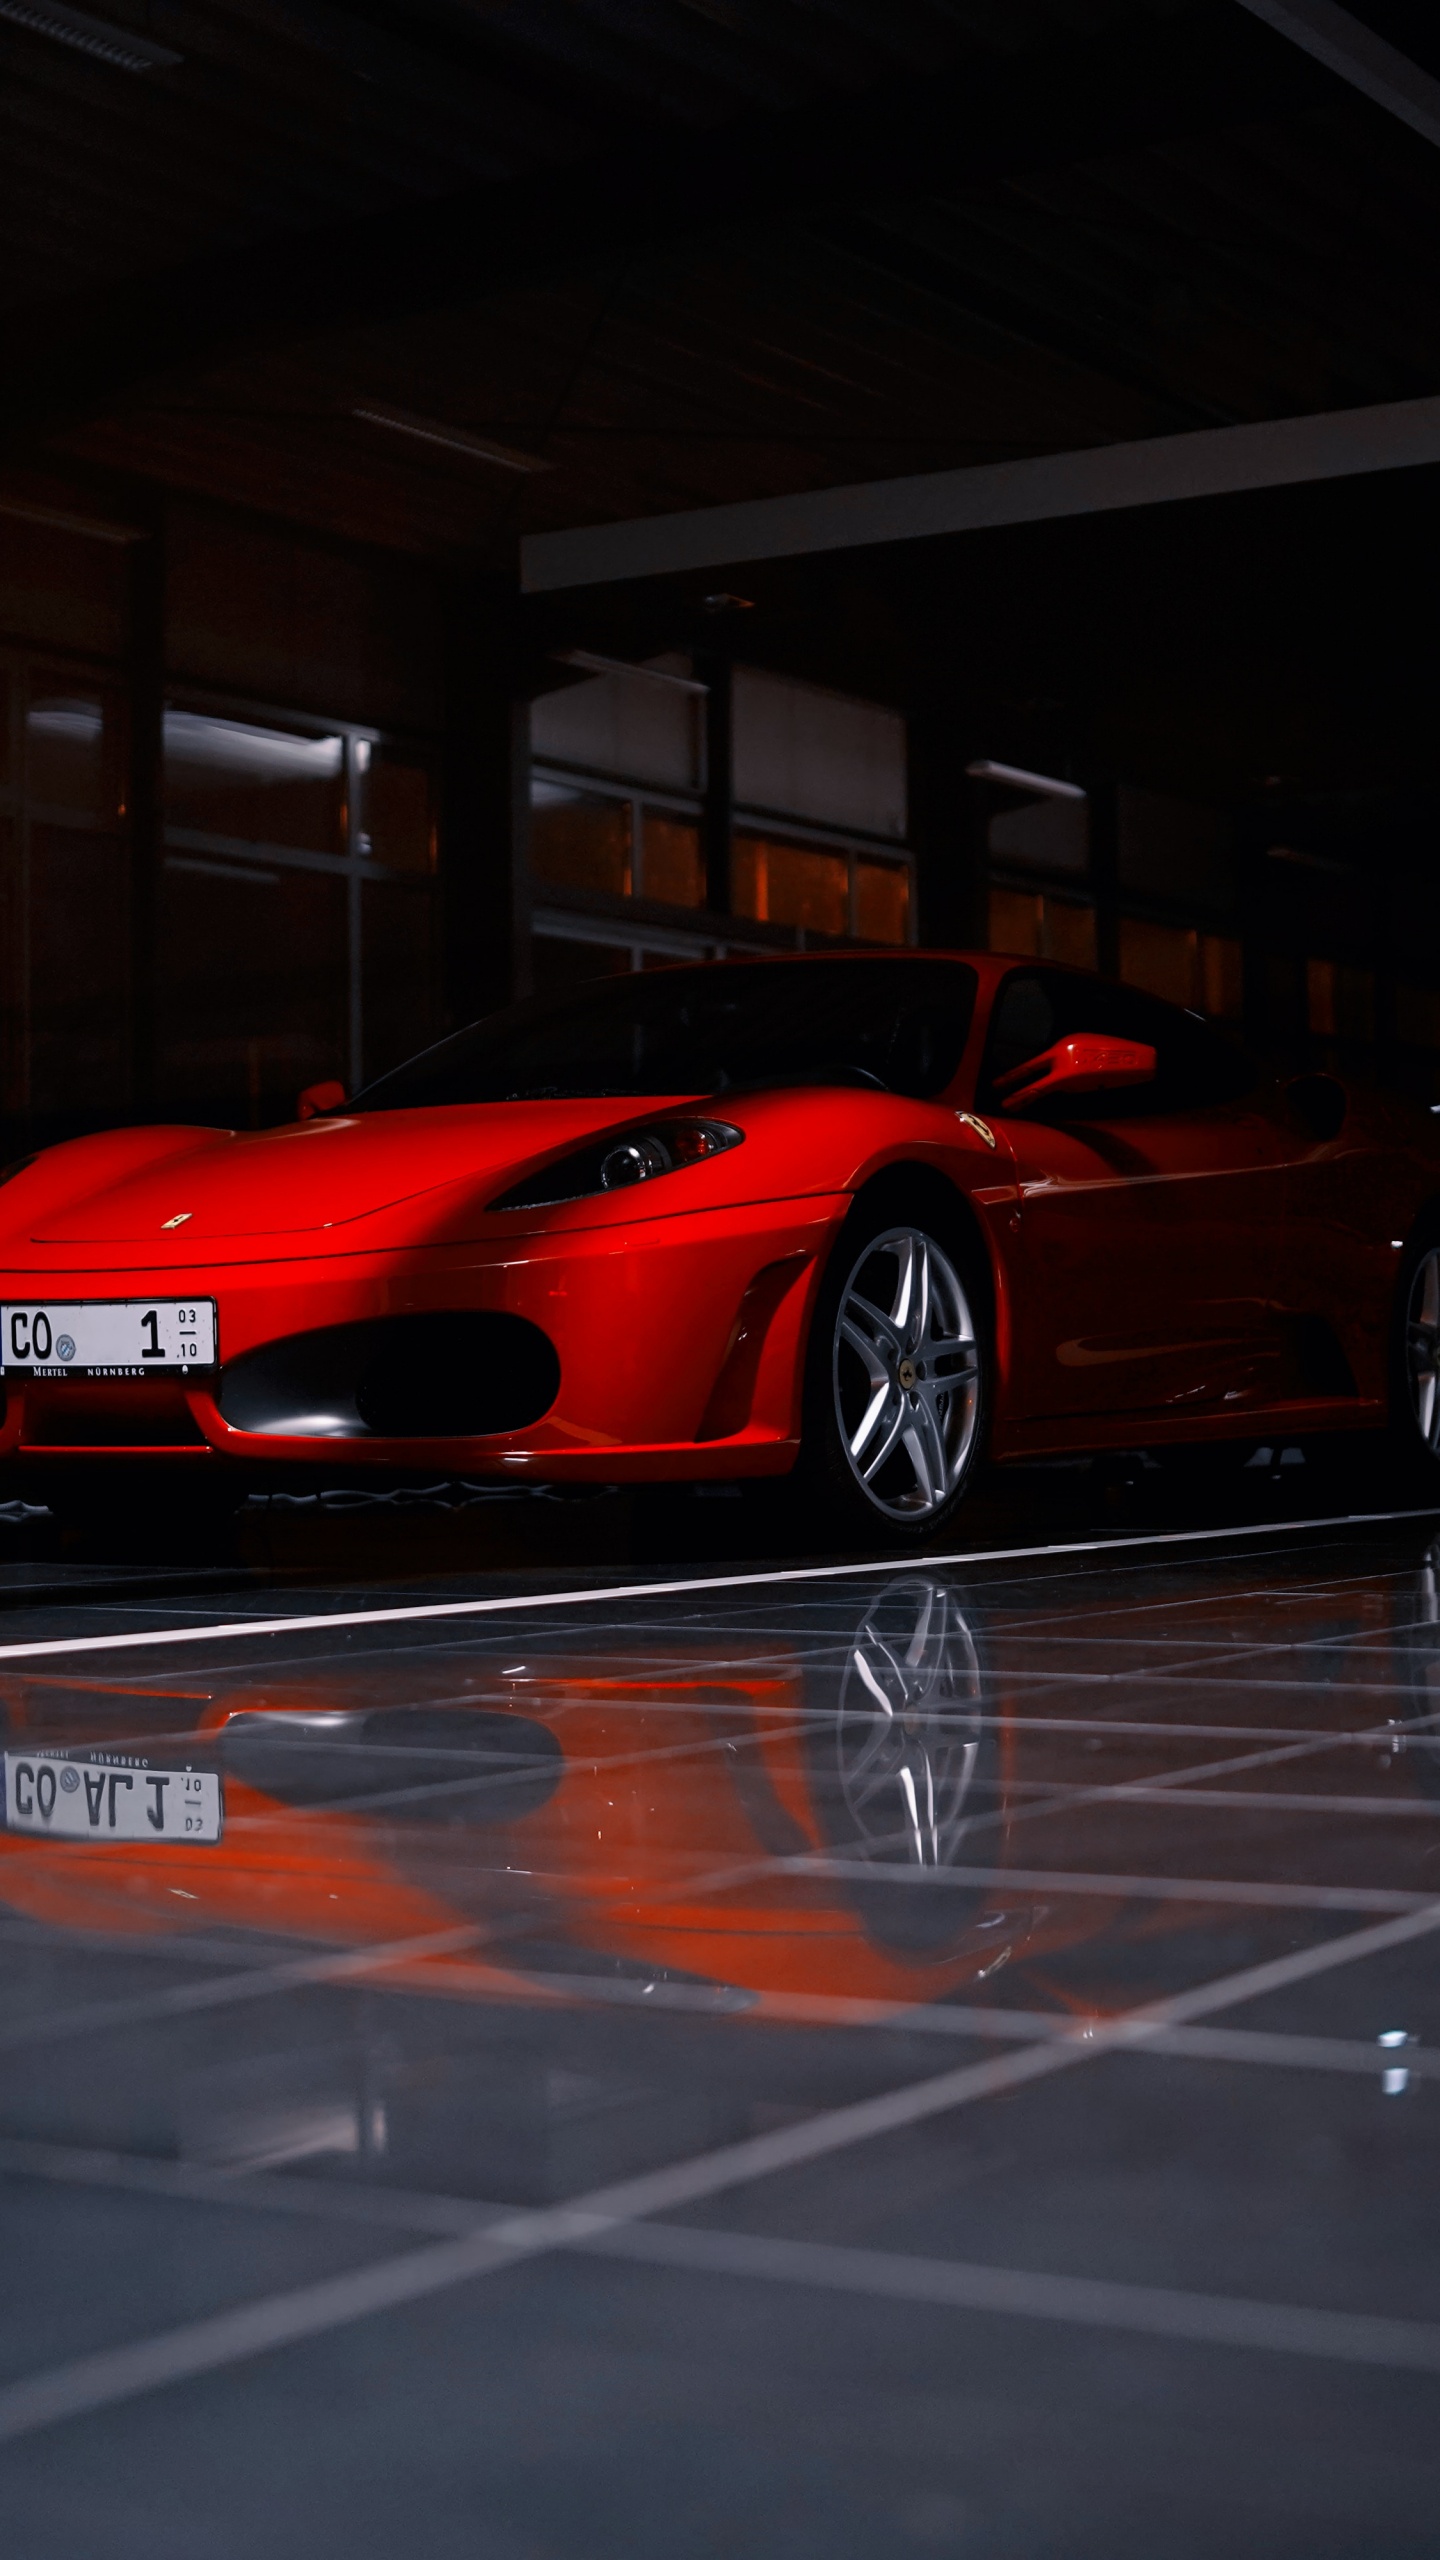 Ferrari 458 Italia Rojo Estacionado en el Estacionamiento. Wallpaper in 1440x2560 Resolution